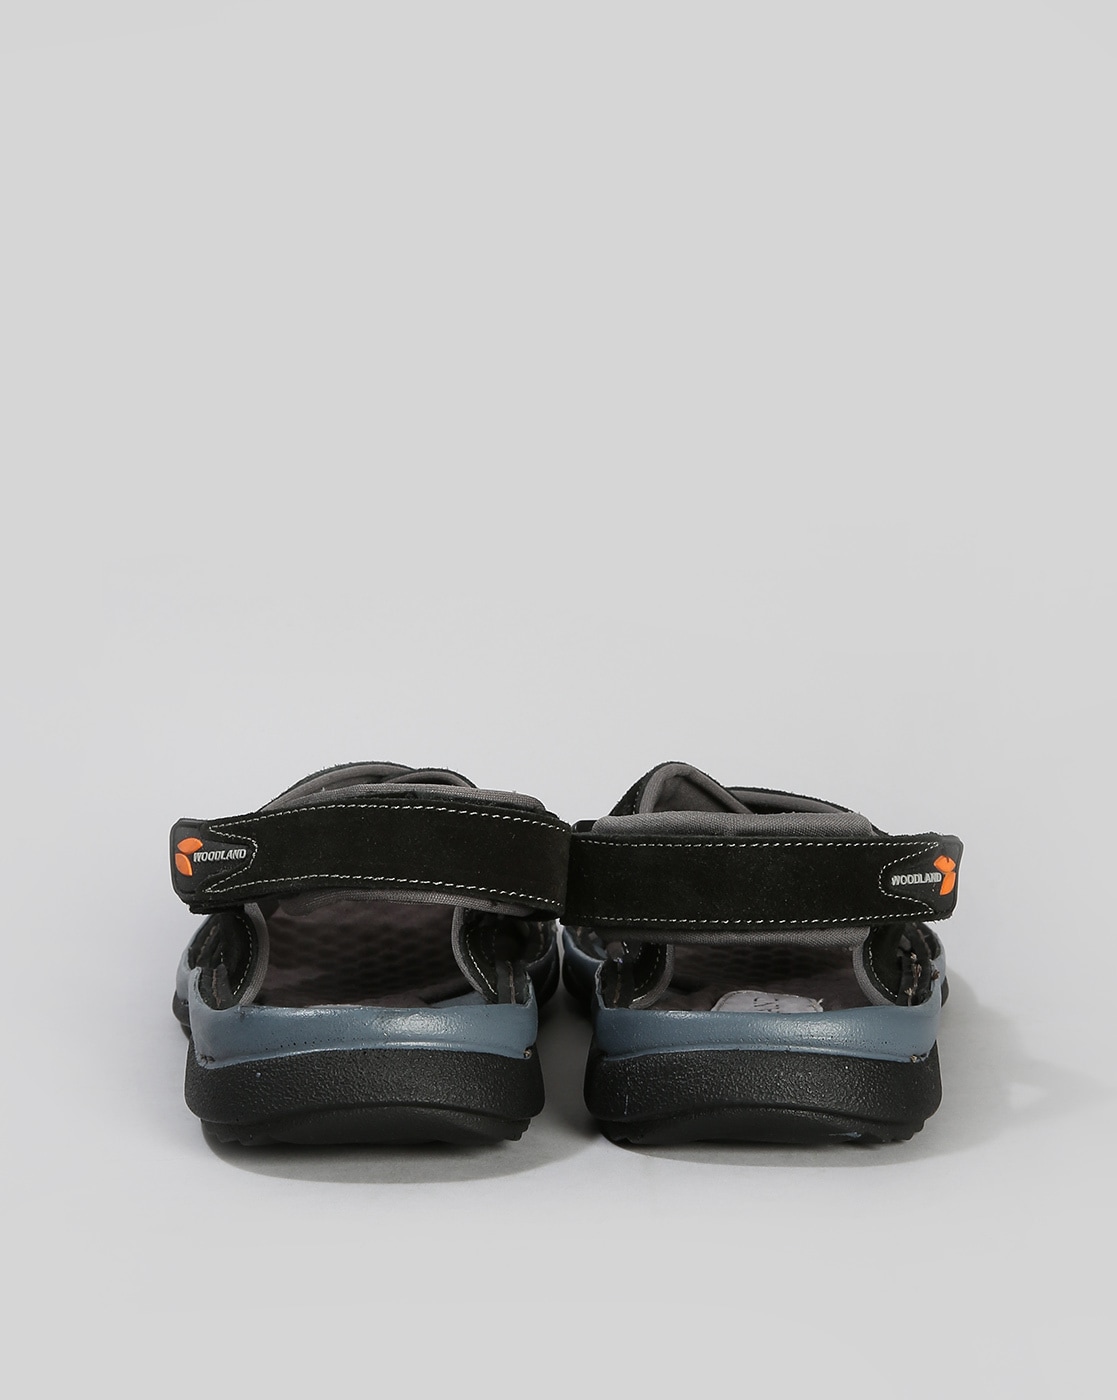 Merrell Men's 8 Dark Earth Sandals Vibram Soles Removable Back Strap  Outdoors | eBay